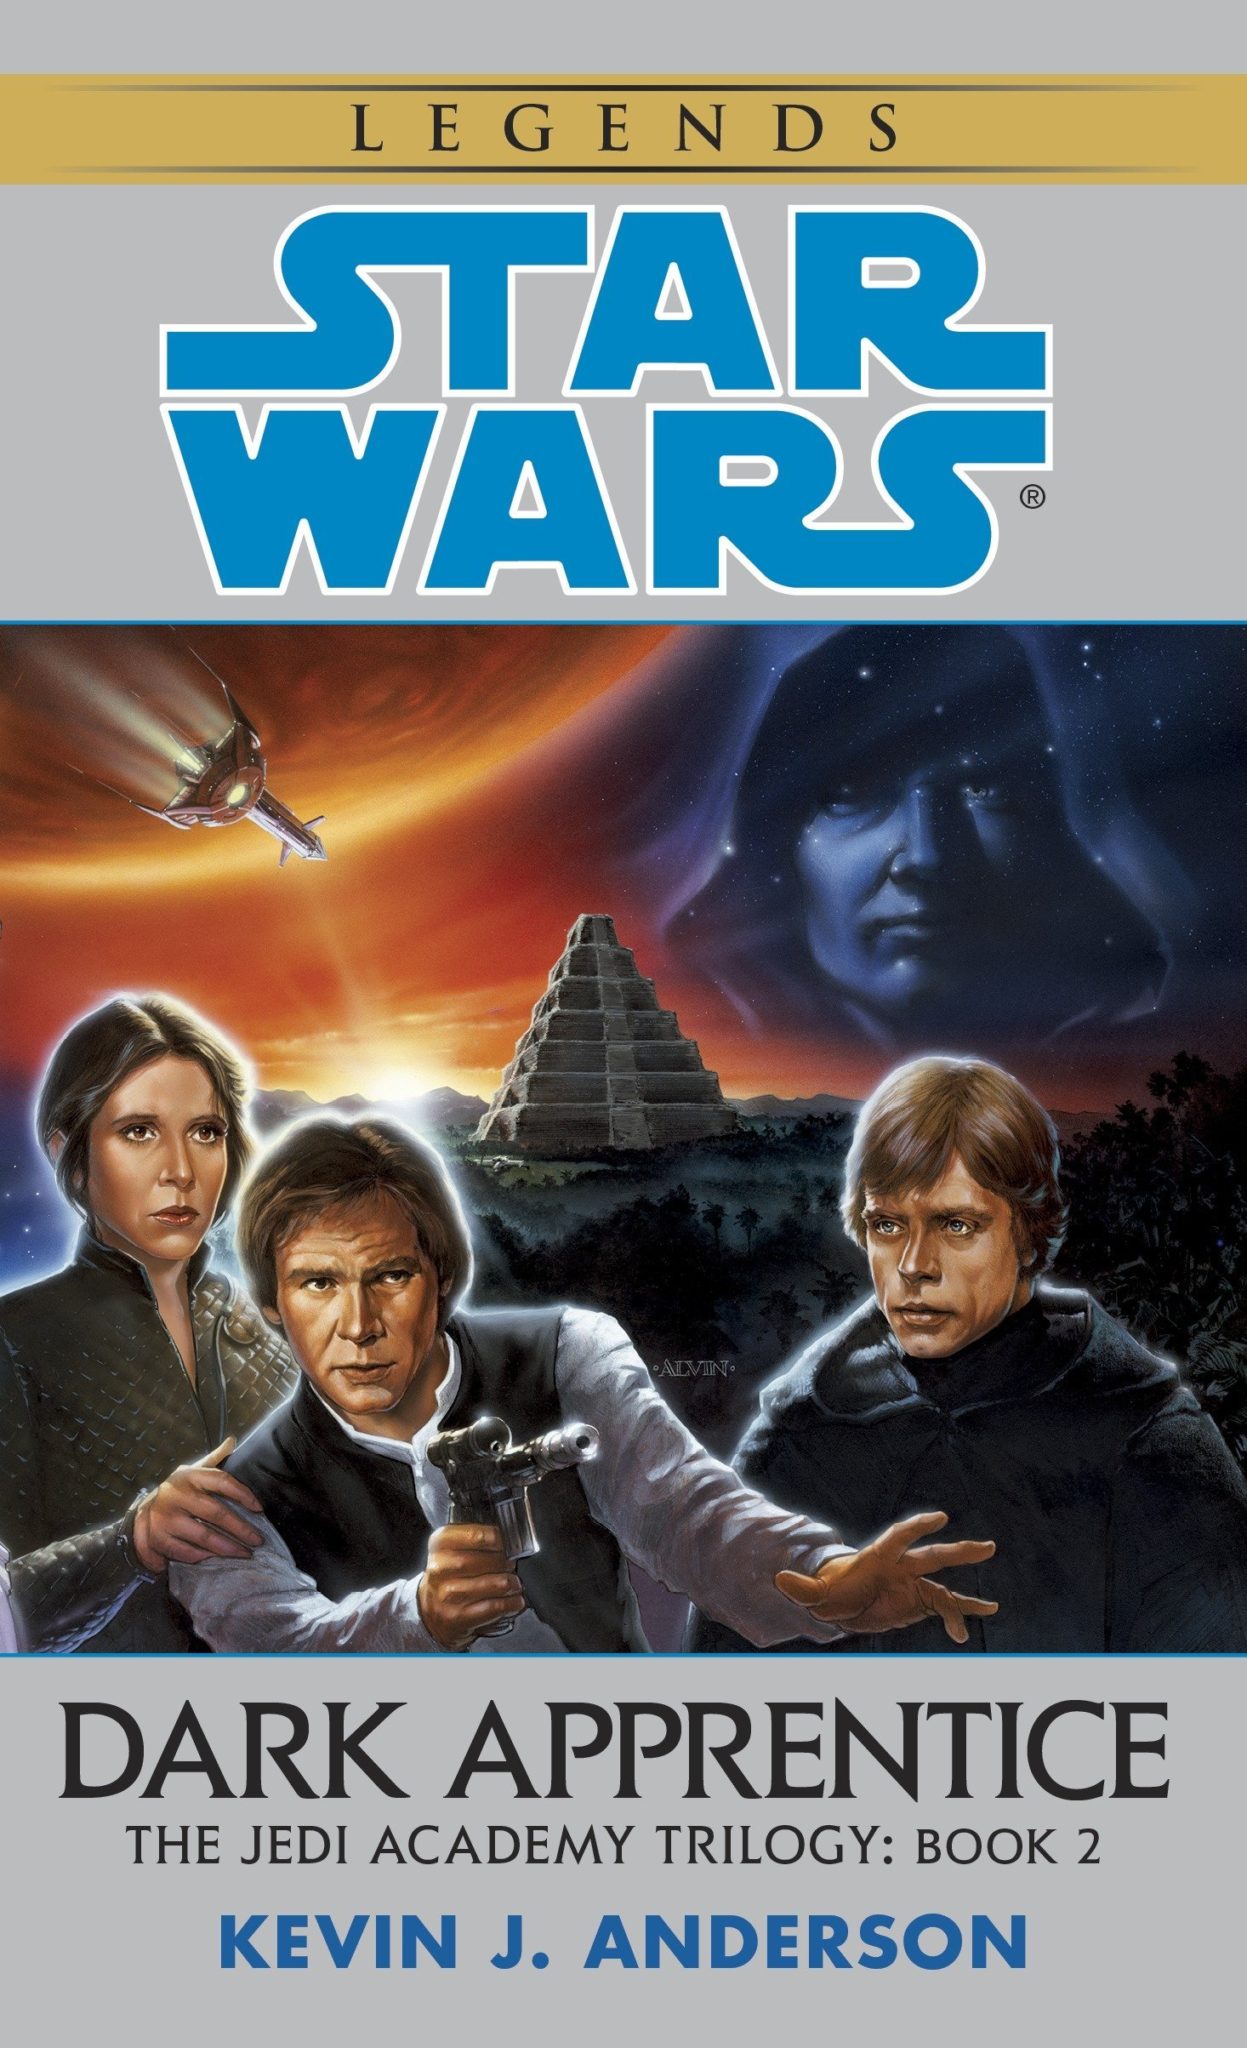 Libros de Star Wars 8